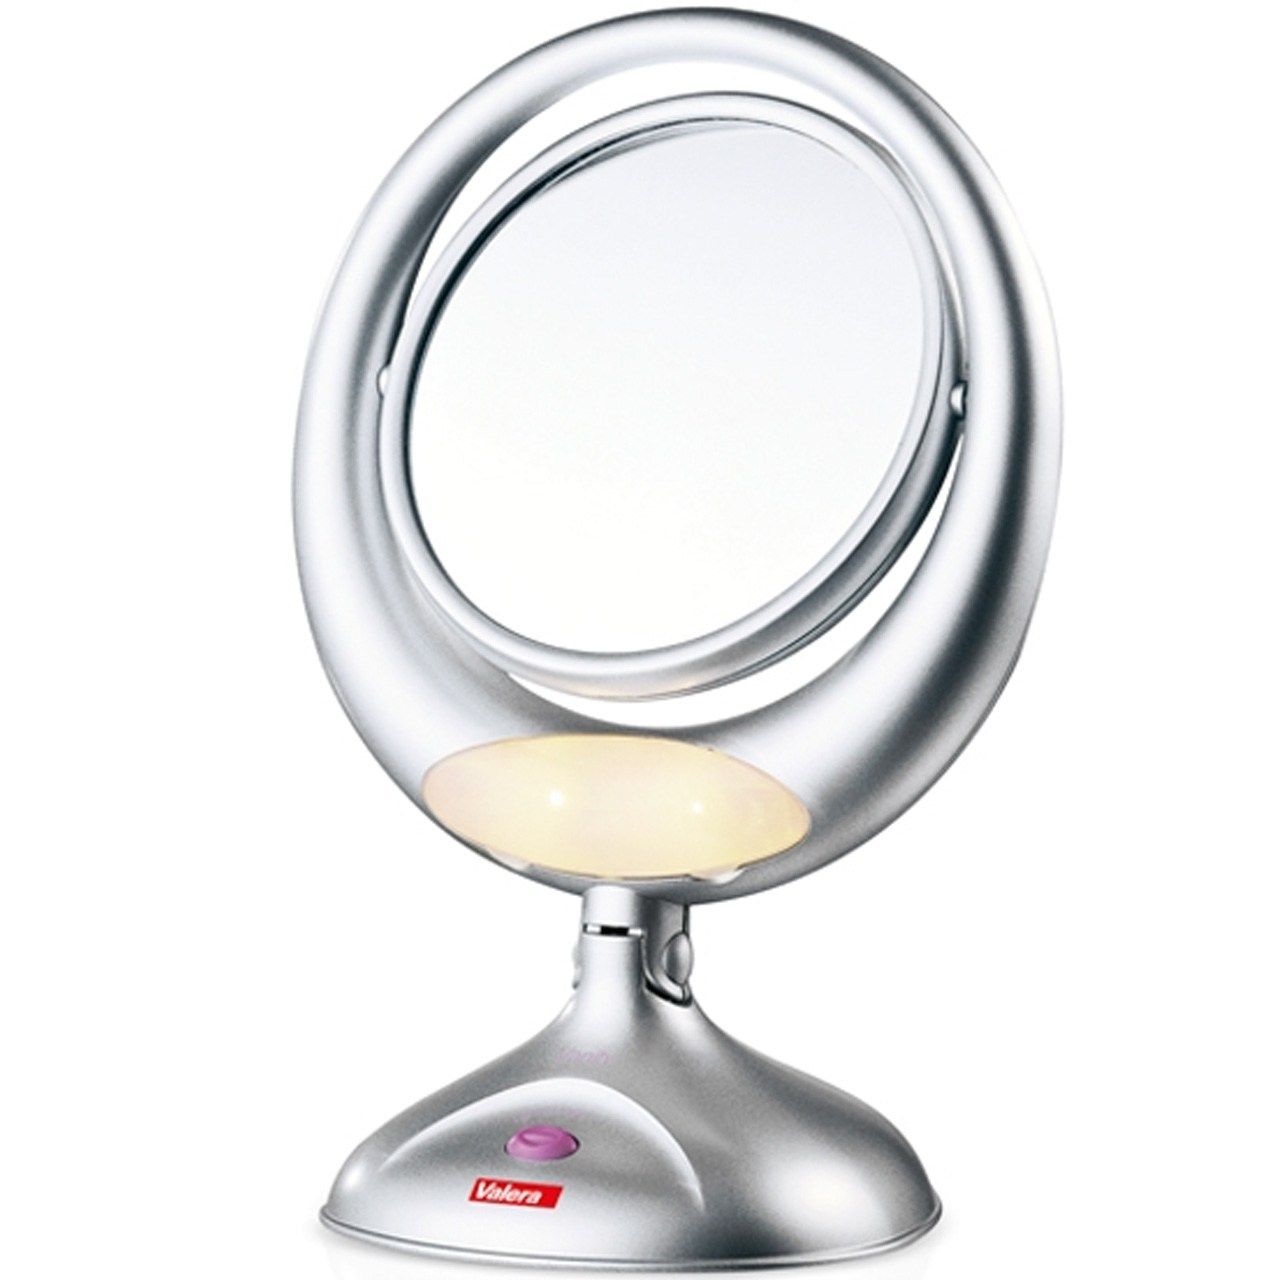 آینه آرایشی والرا مدل 618-01 Vanity -  - 1